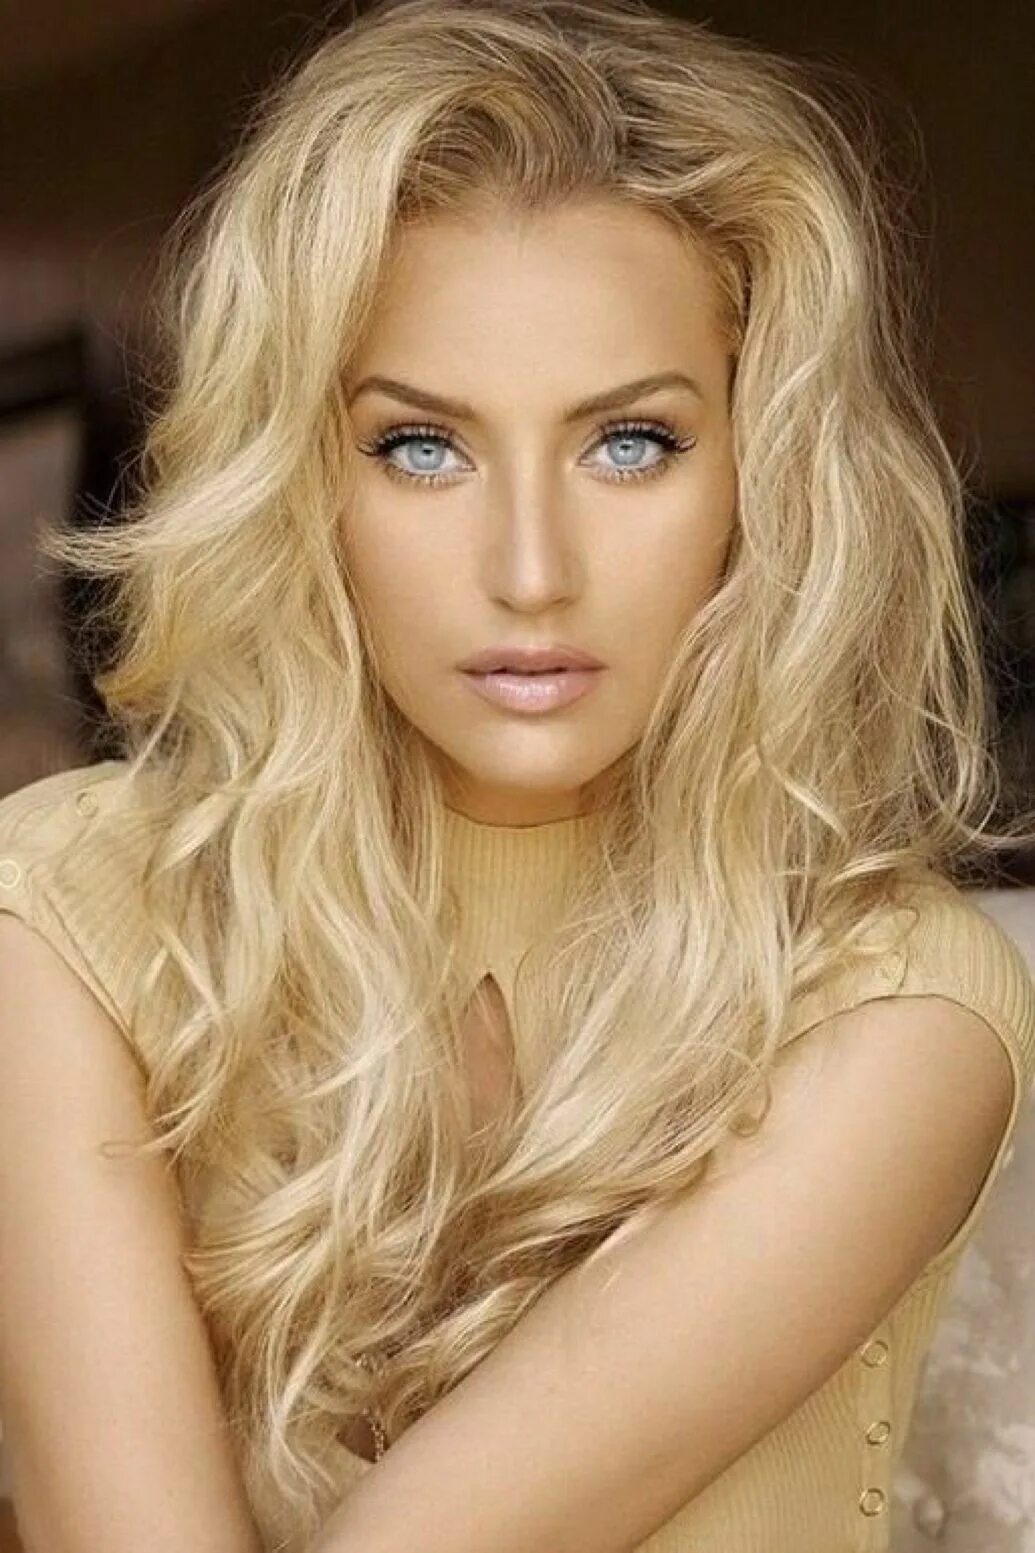 Amazing blonde. Карелеа Мацола модель. Модель Даниэль Кнадсон. Стефани Даниэль пепельная блонд.